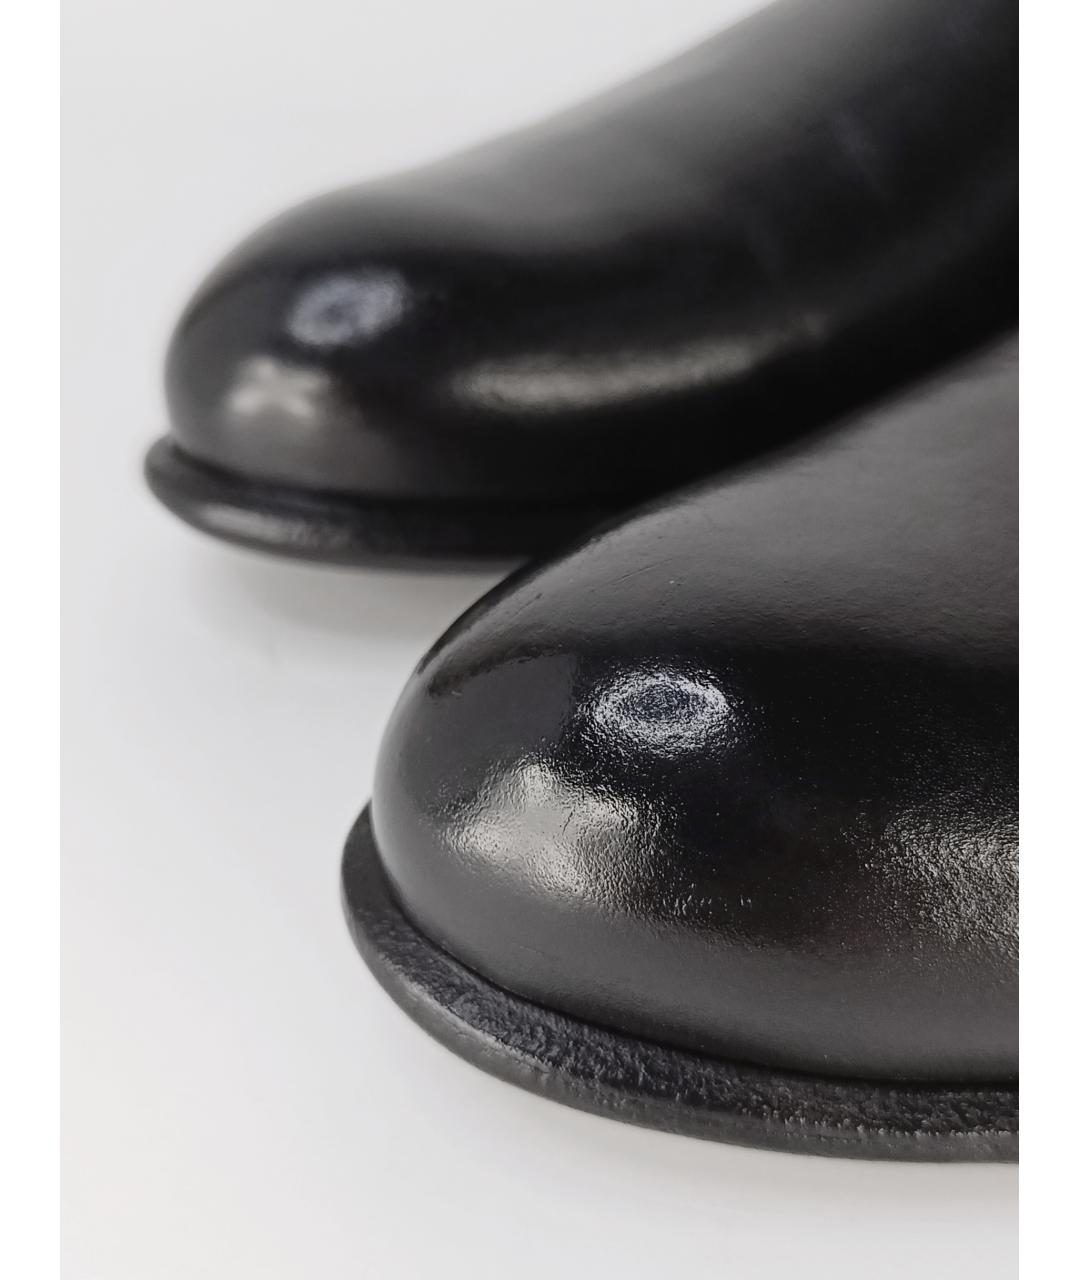 LOUIS VUITTON PRE-OWNED Черные кожаные высокие ботинки, фото 9